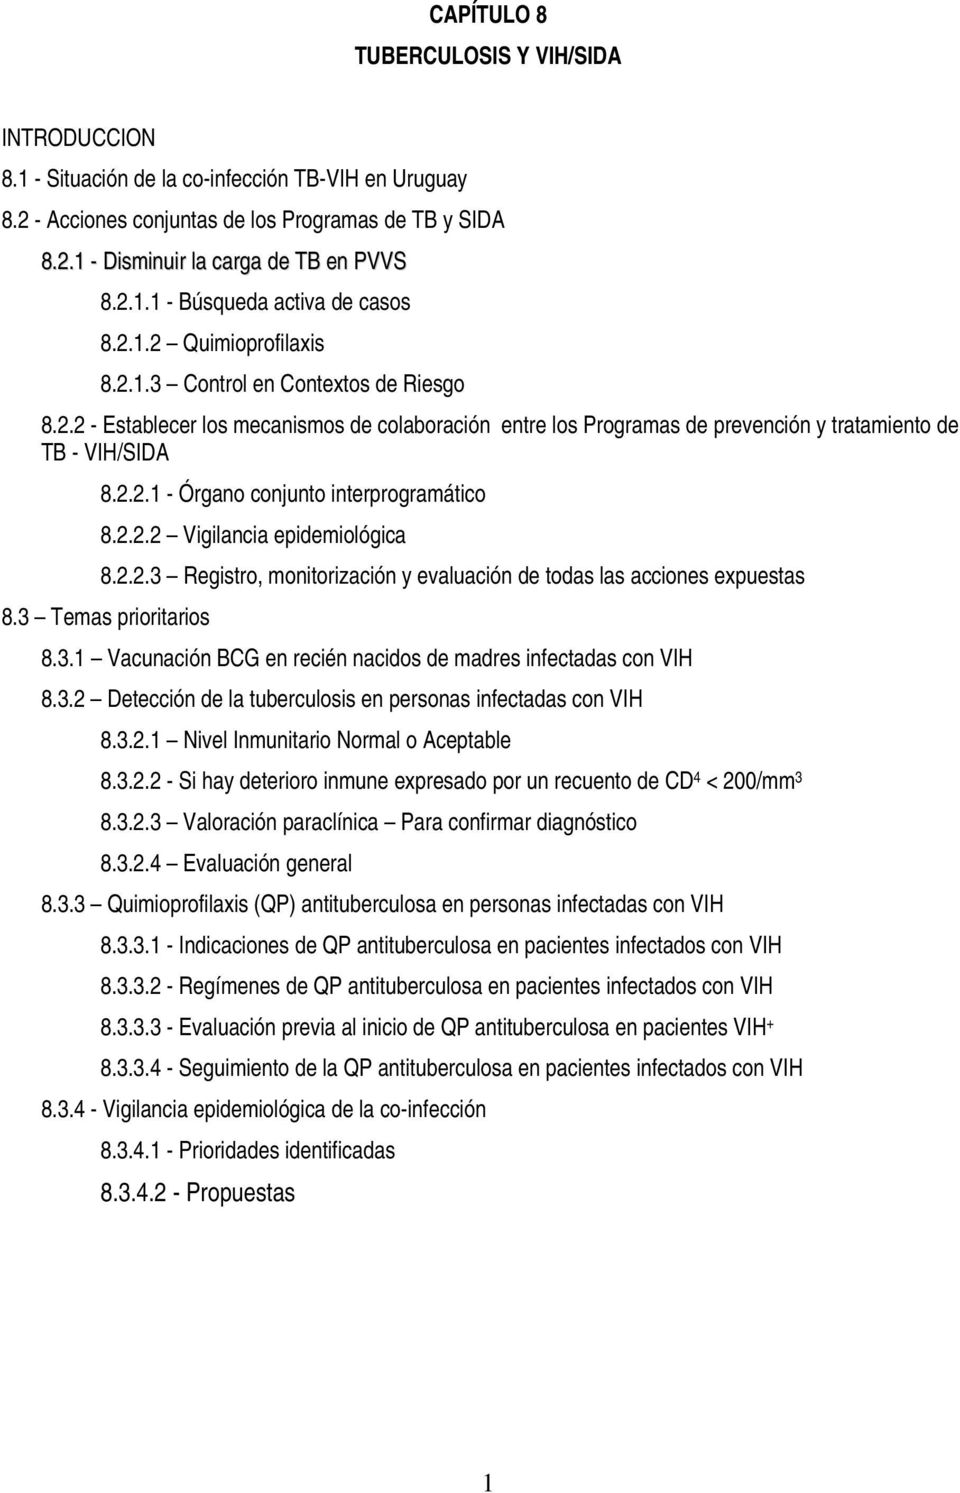 2.2.1 - Órgano conjunto interprogramático 8.2.2.2 Vigilancia epidemiológica 8.2.2.3 Registro, monitorización y evaluación de todas las acciones expuestas 8.3 Temas prioritarios 8.3.1 Vacunación BCG en recién nacidos de madres infectadas con VIH 8.